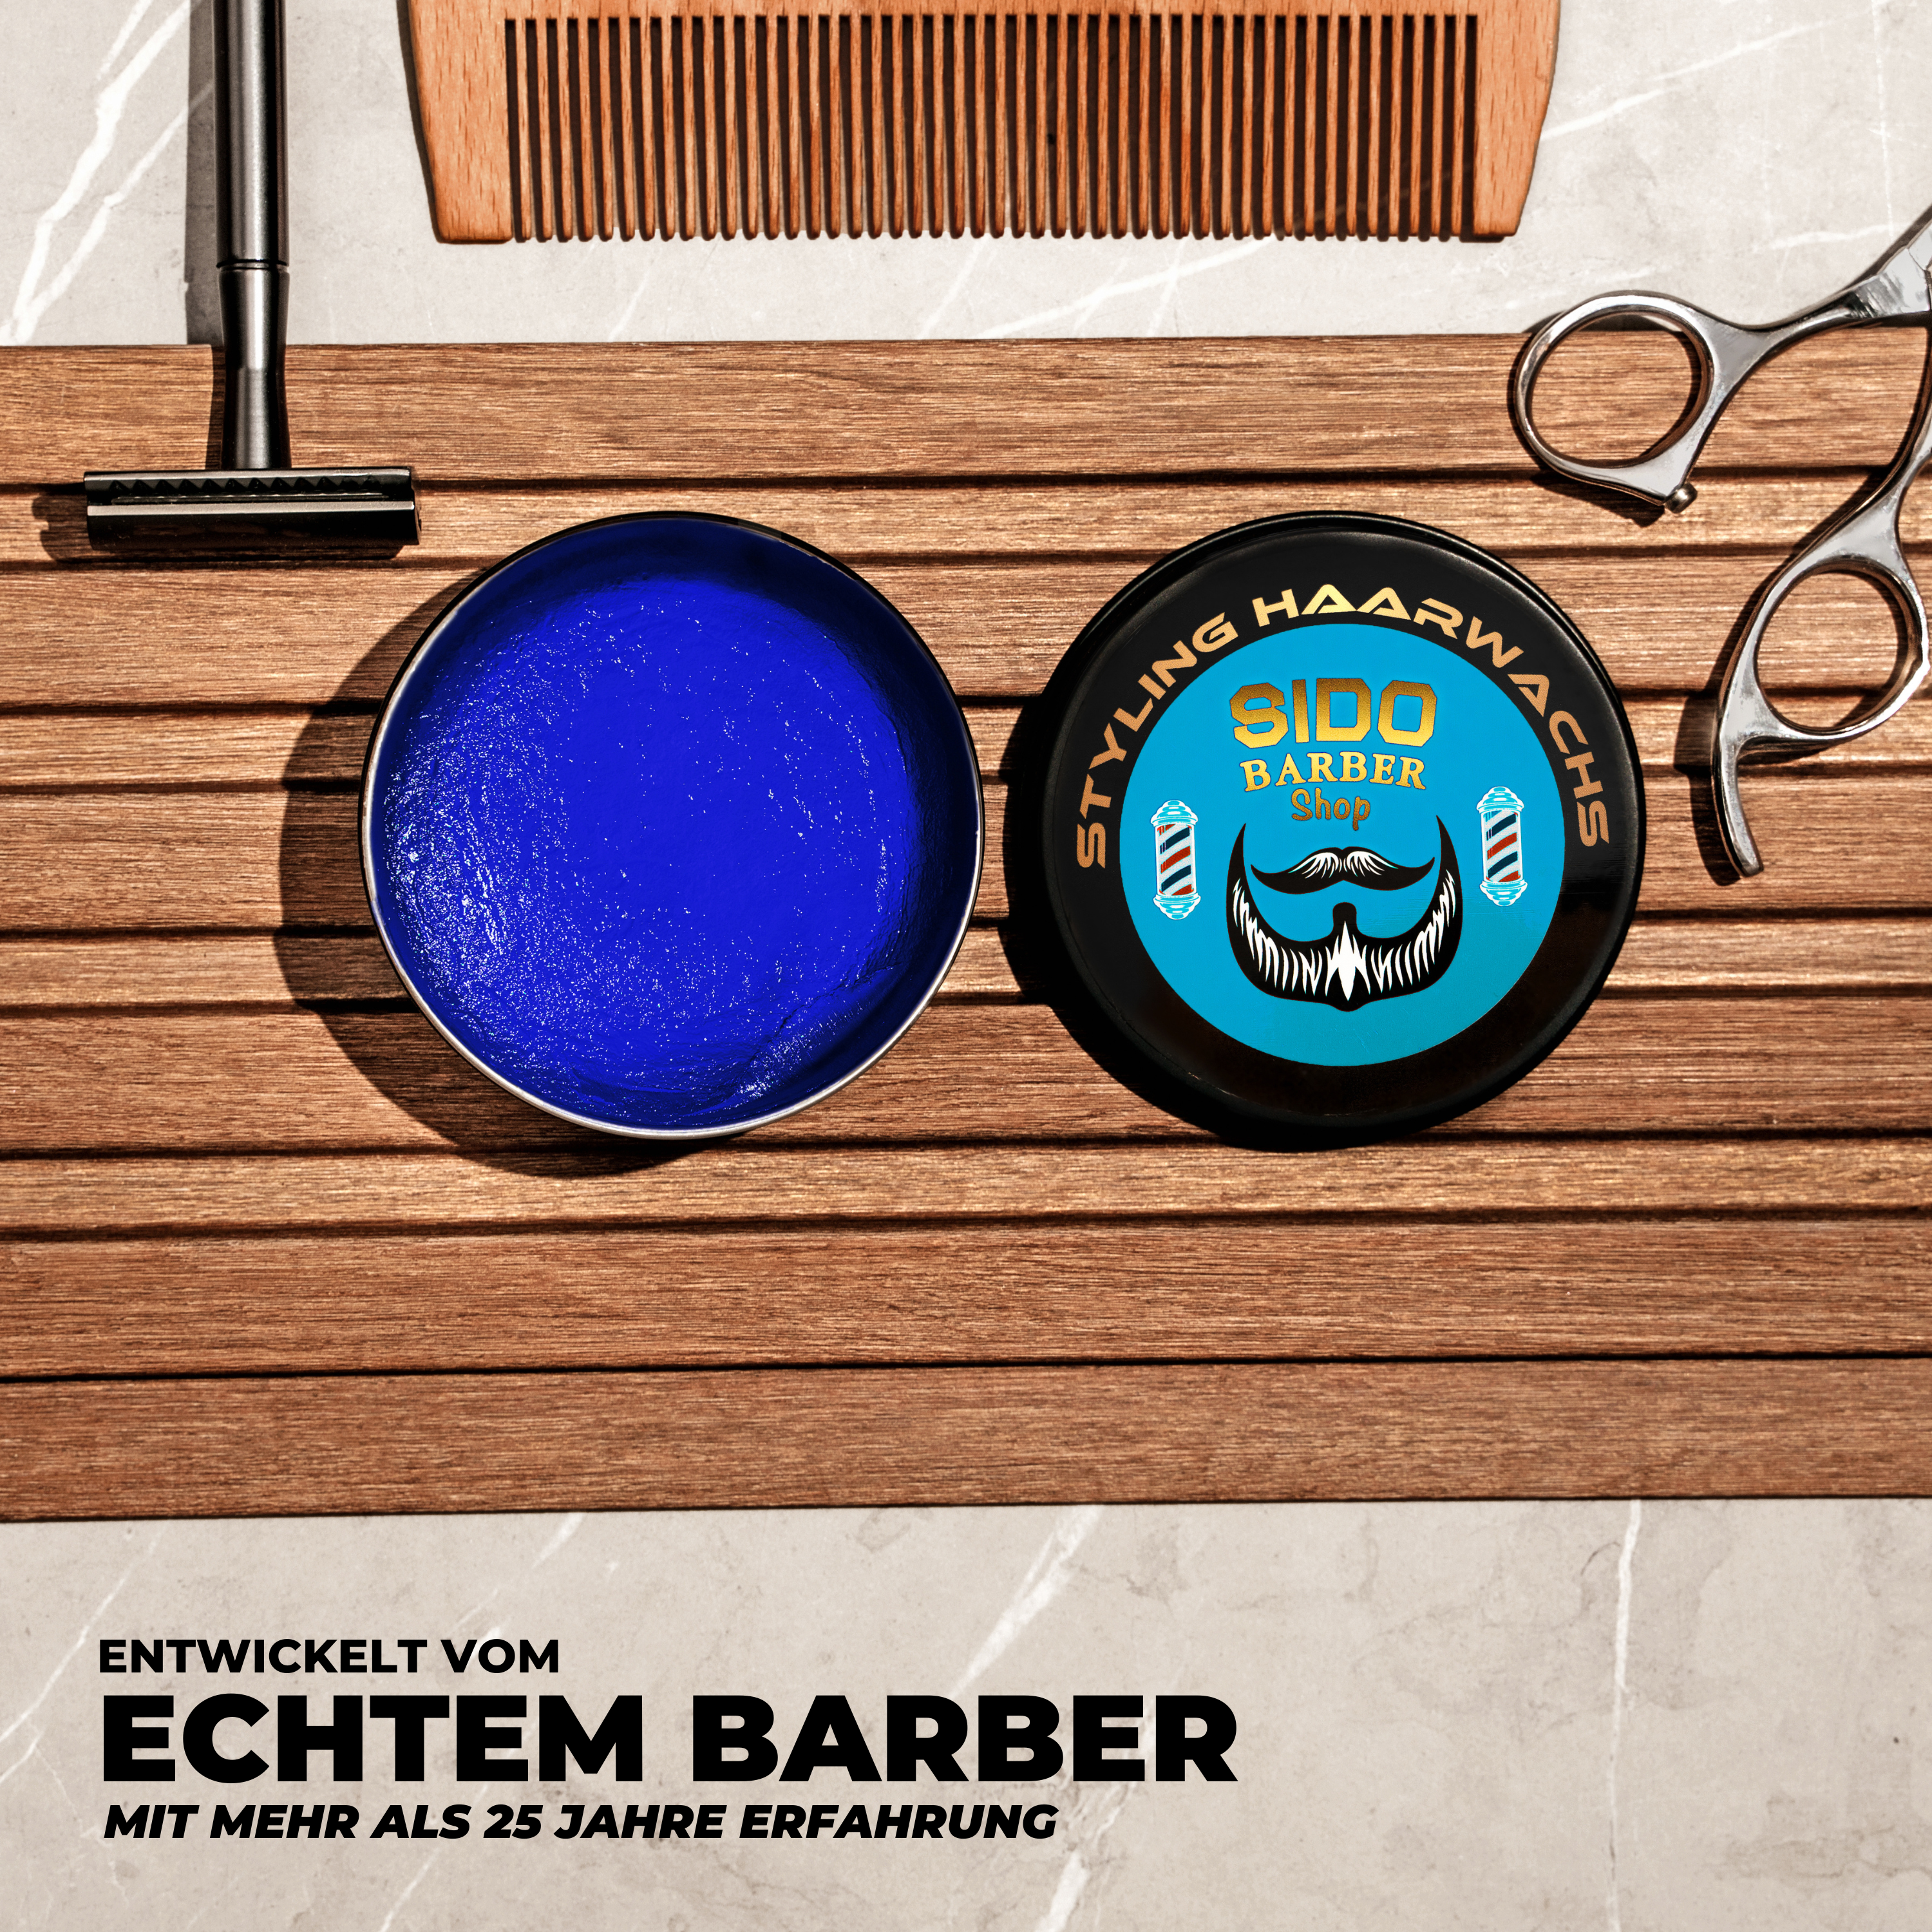 SIDO BARBER Shop Haarwachs Männer (Blau) Friseur Haar Wachs für starken Halt - Hair Wax für Herren ohne Schmieren, Kleben & Rückstände